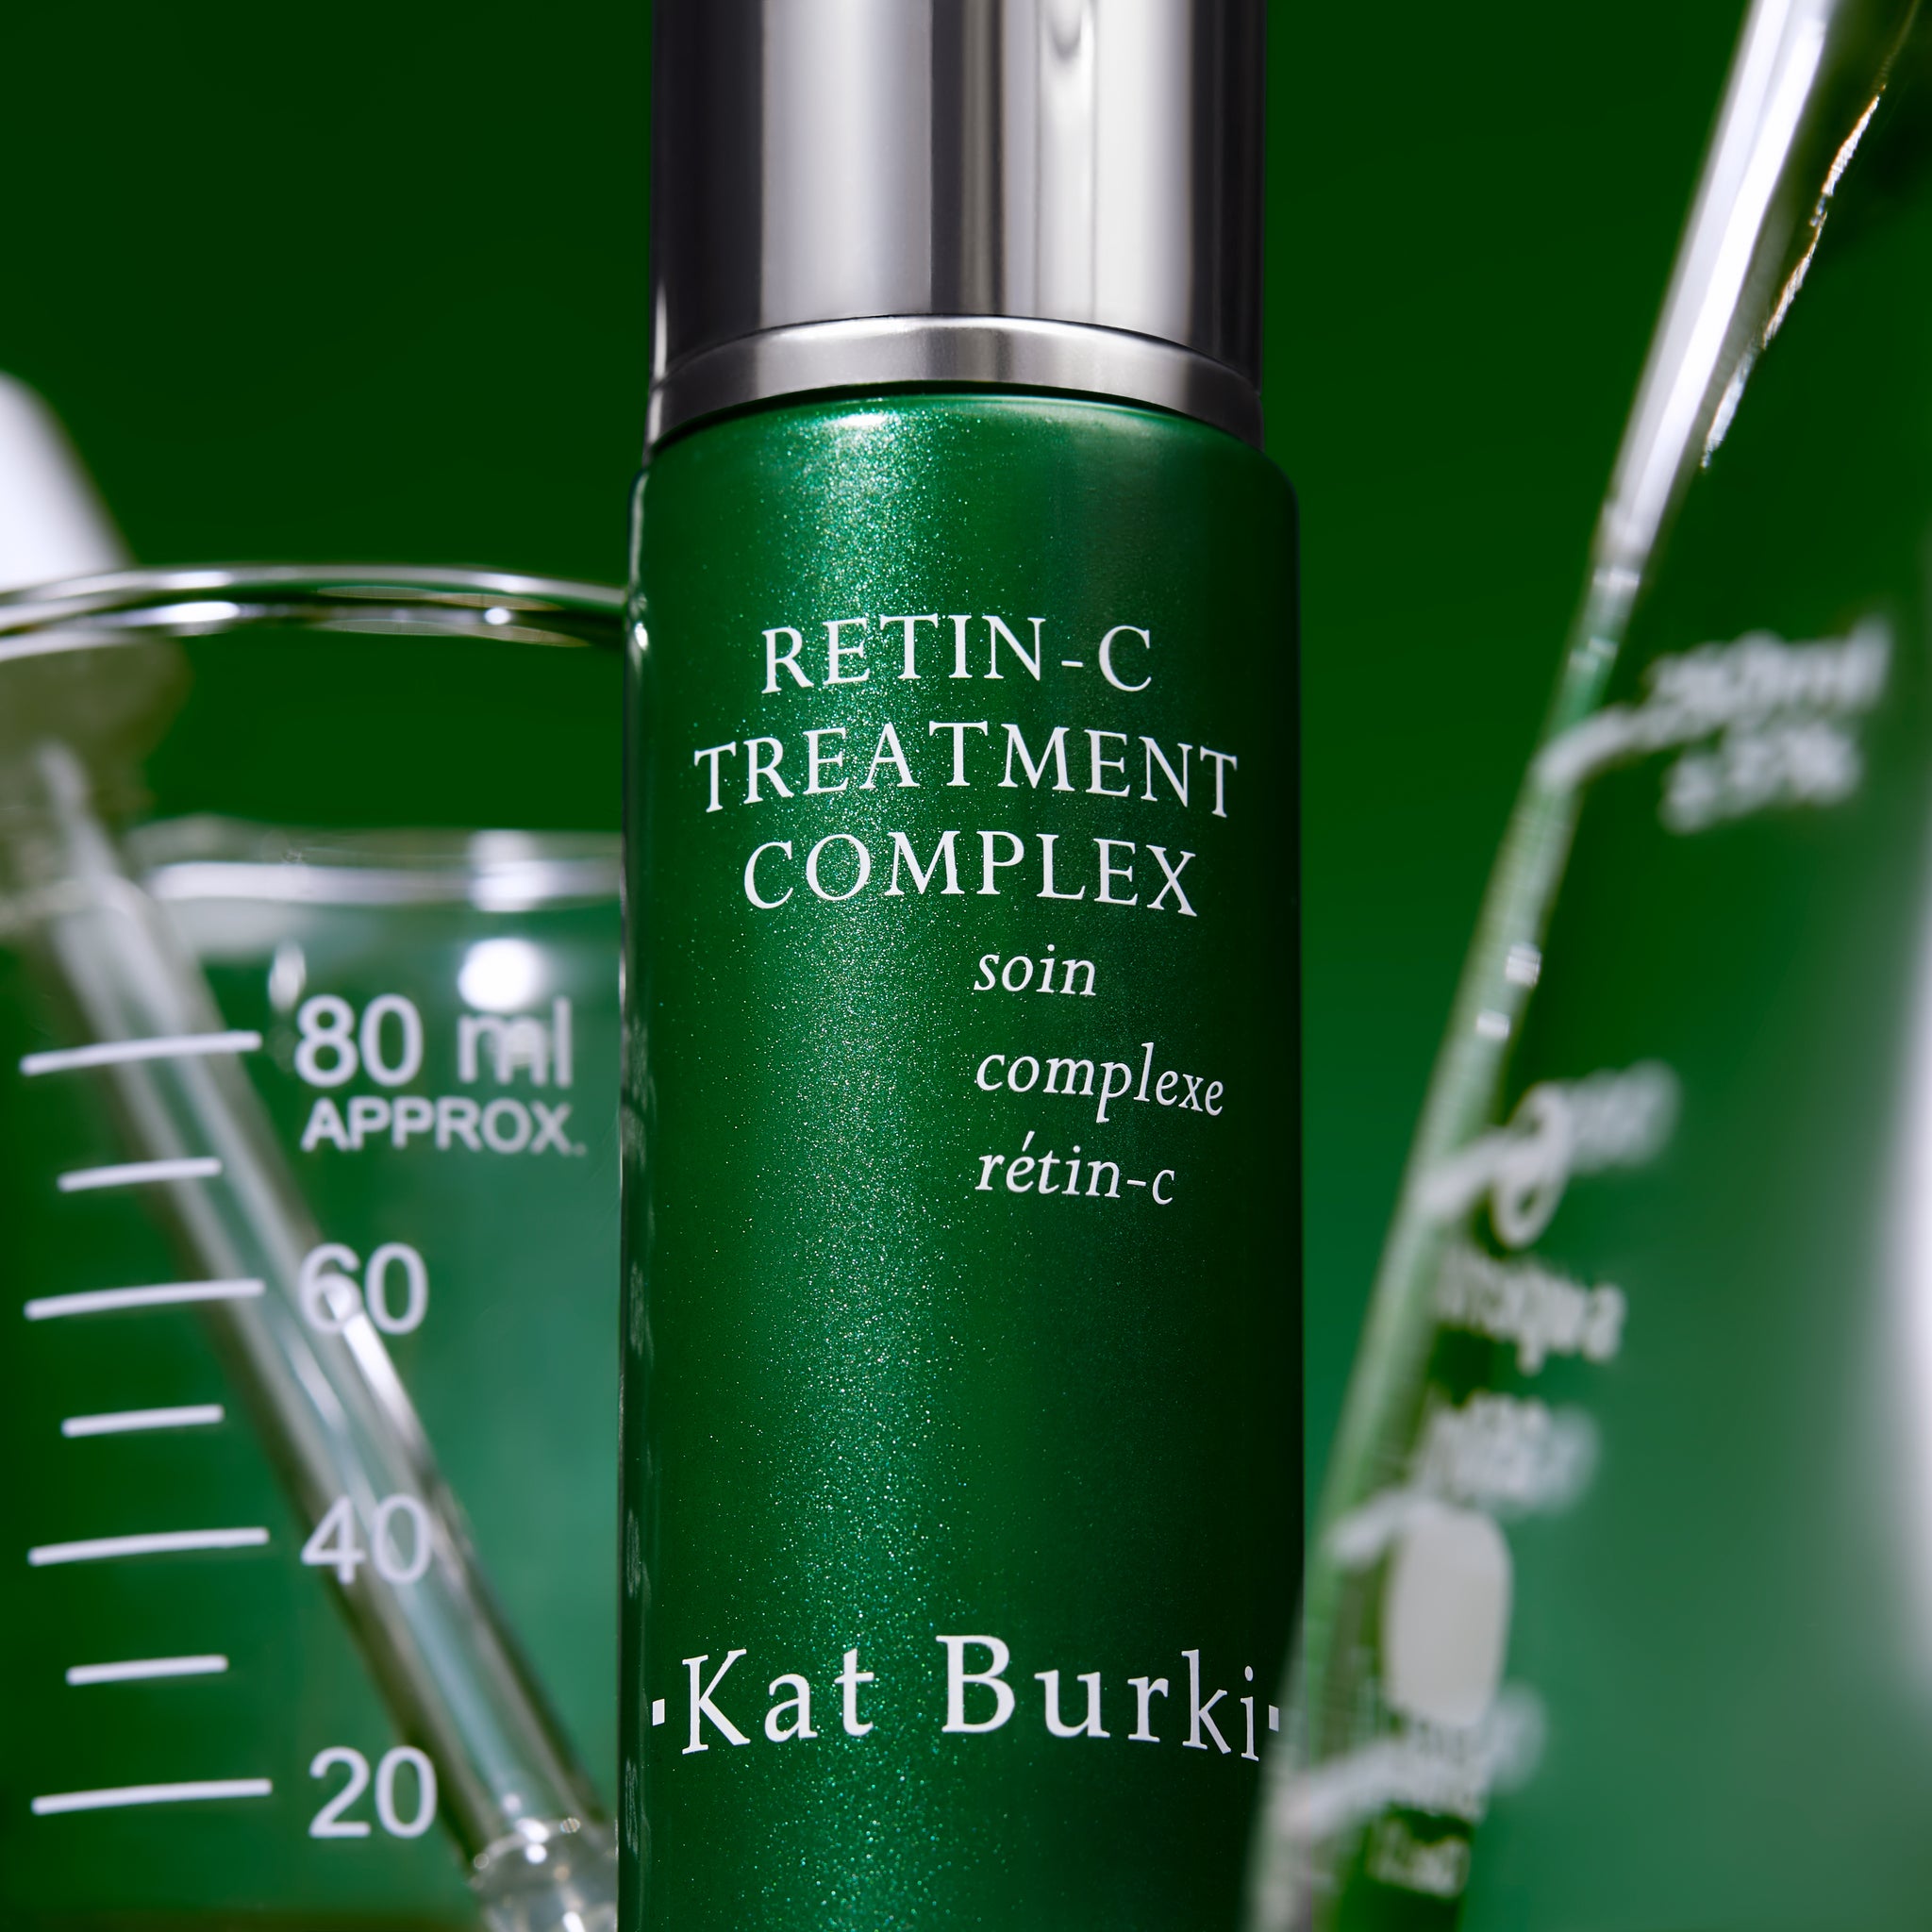 Kat Burki's Retin-C Treatment Complex